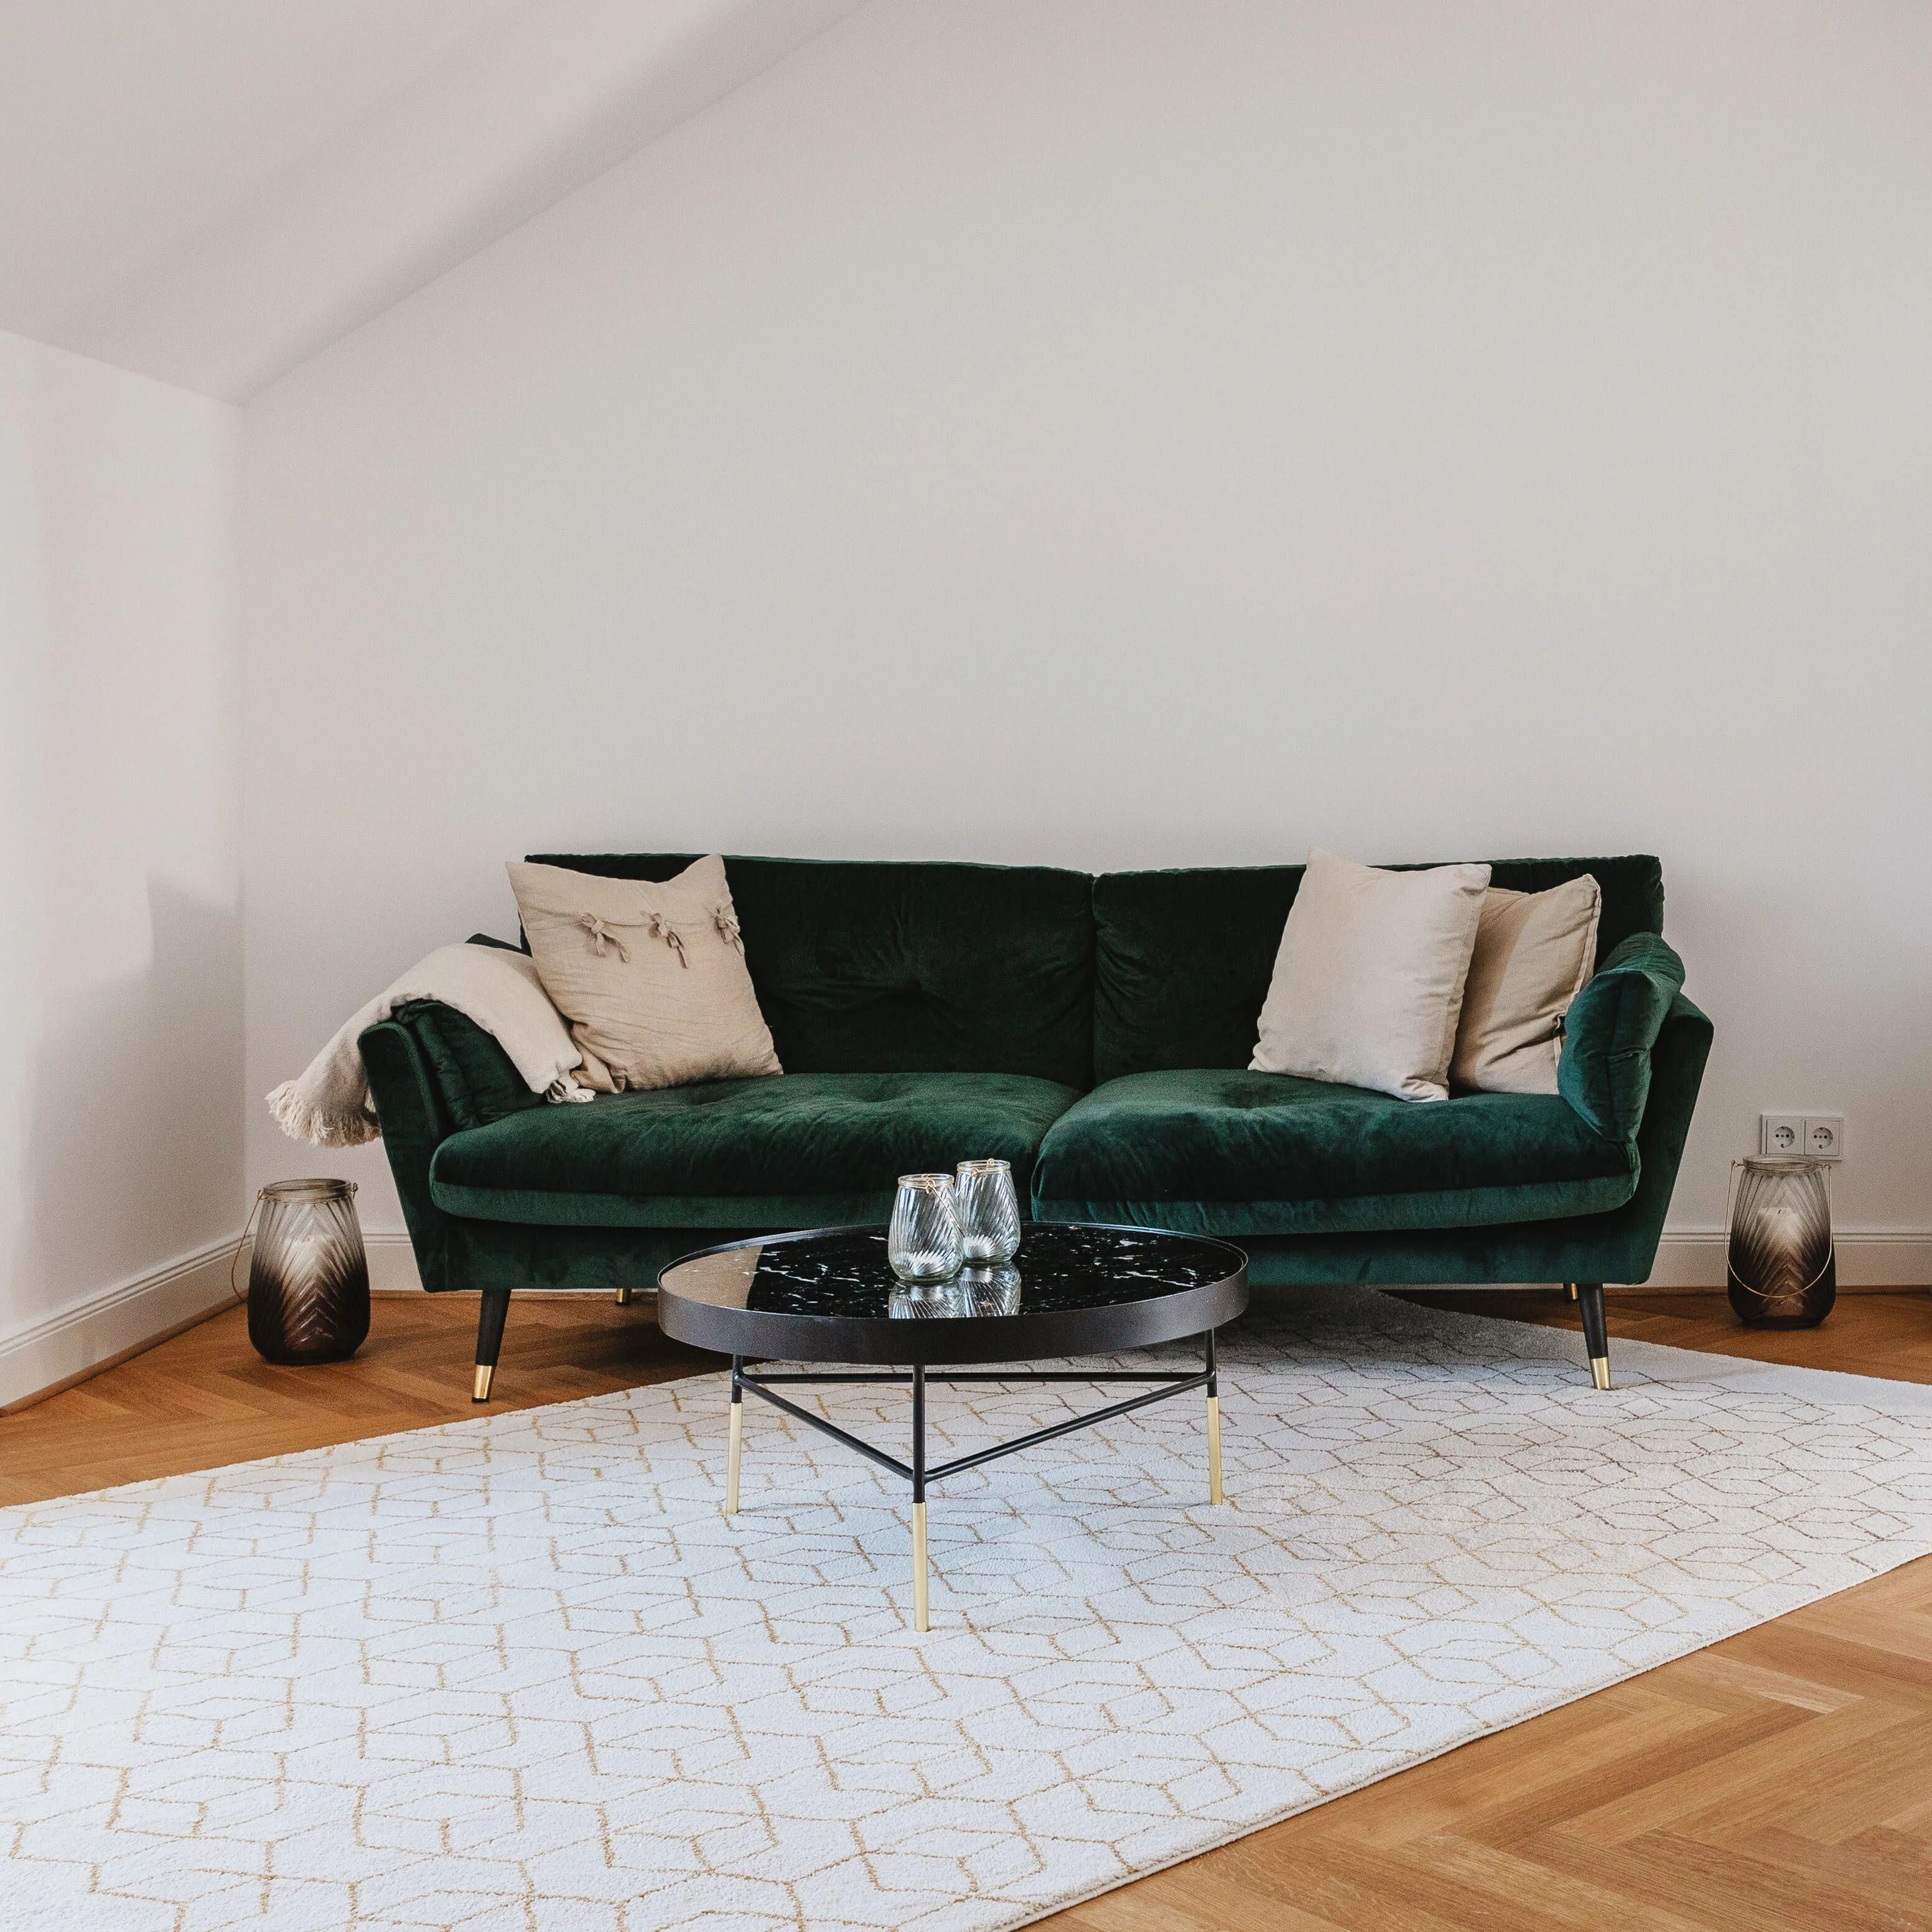 Bild von einem Wohnzimmer bevor dem Room Makeover: Leer wirkender Ram mit einem dunkelgrünen Chelsea-Sofa, drei Dekokissen und einem hellen Teppich